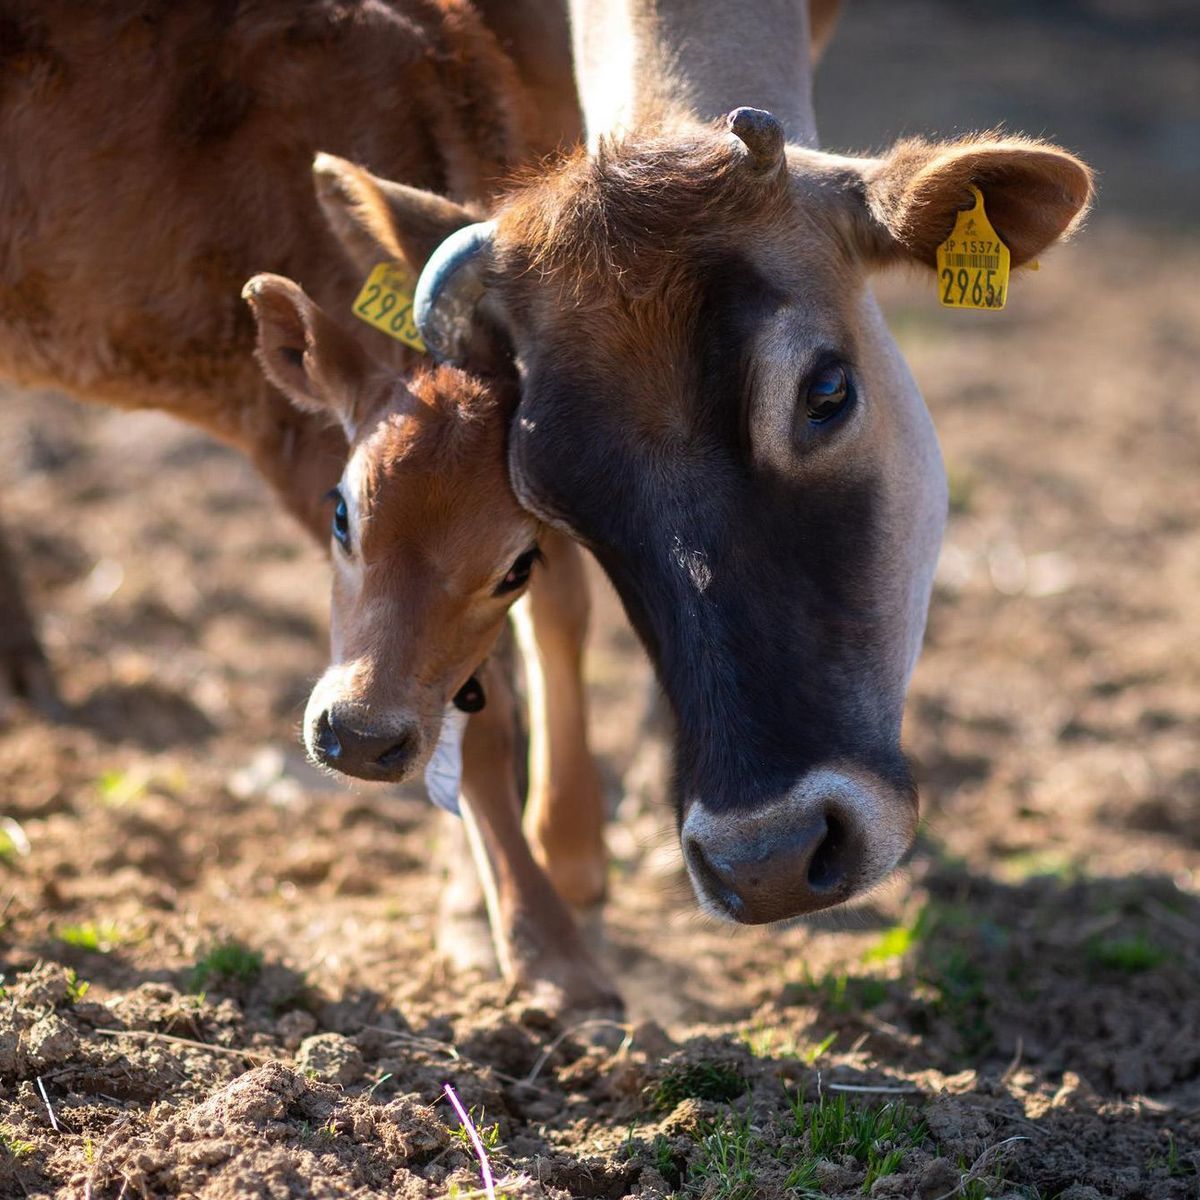 母牛に甘える仔牛。仔牛は母牛に顔をなめてほしくて、顔を近づけてくる。牛は愛情深い動物だ。